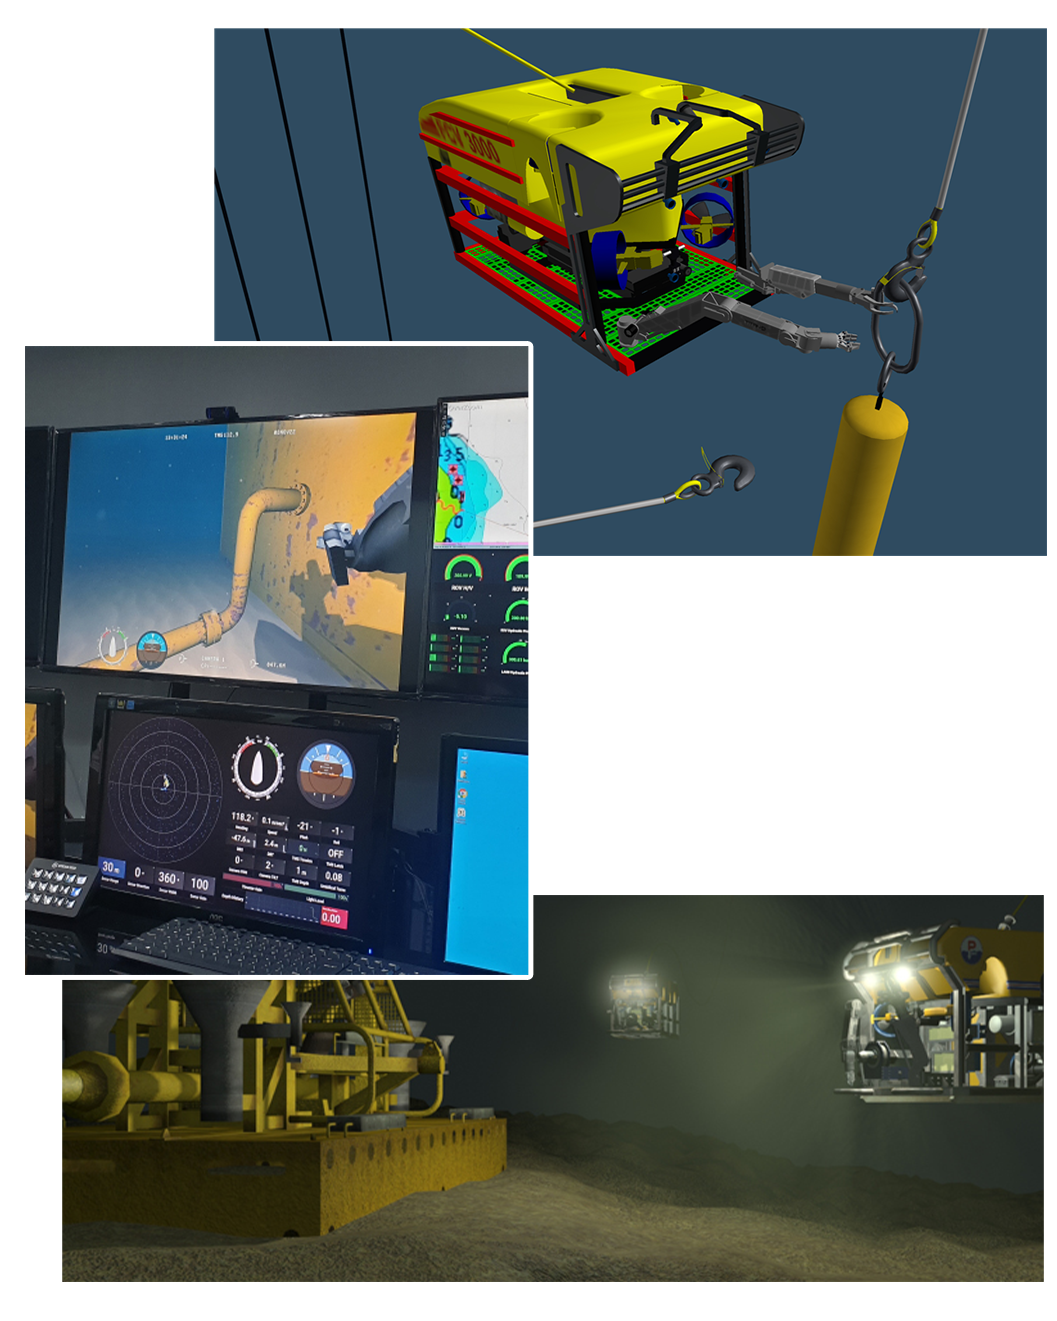 In alto, simulazione di un ROV in azione; al centro, monitor che mostrano la simulazione di un sistema ROV; in basso, due ROV simulati al lavoro in un sito oil & gas.